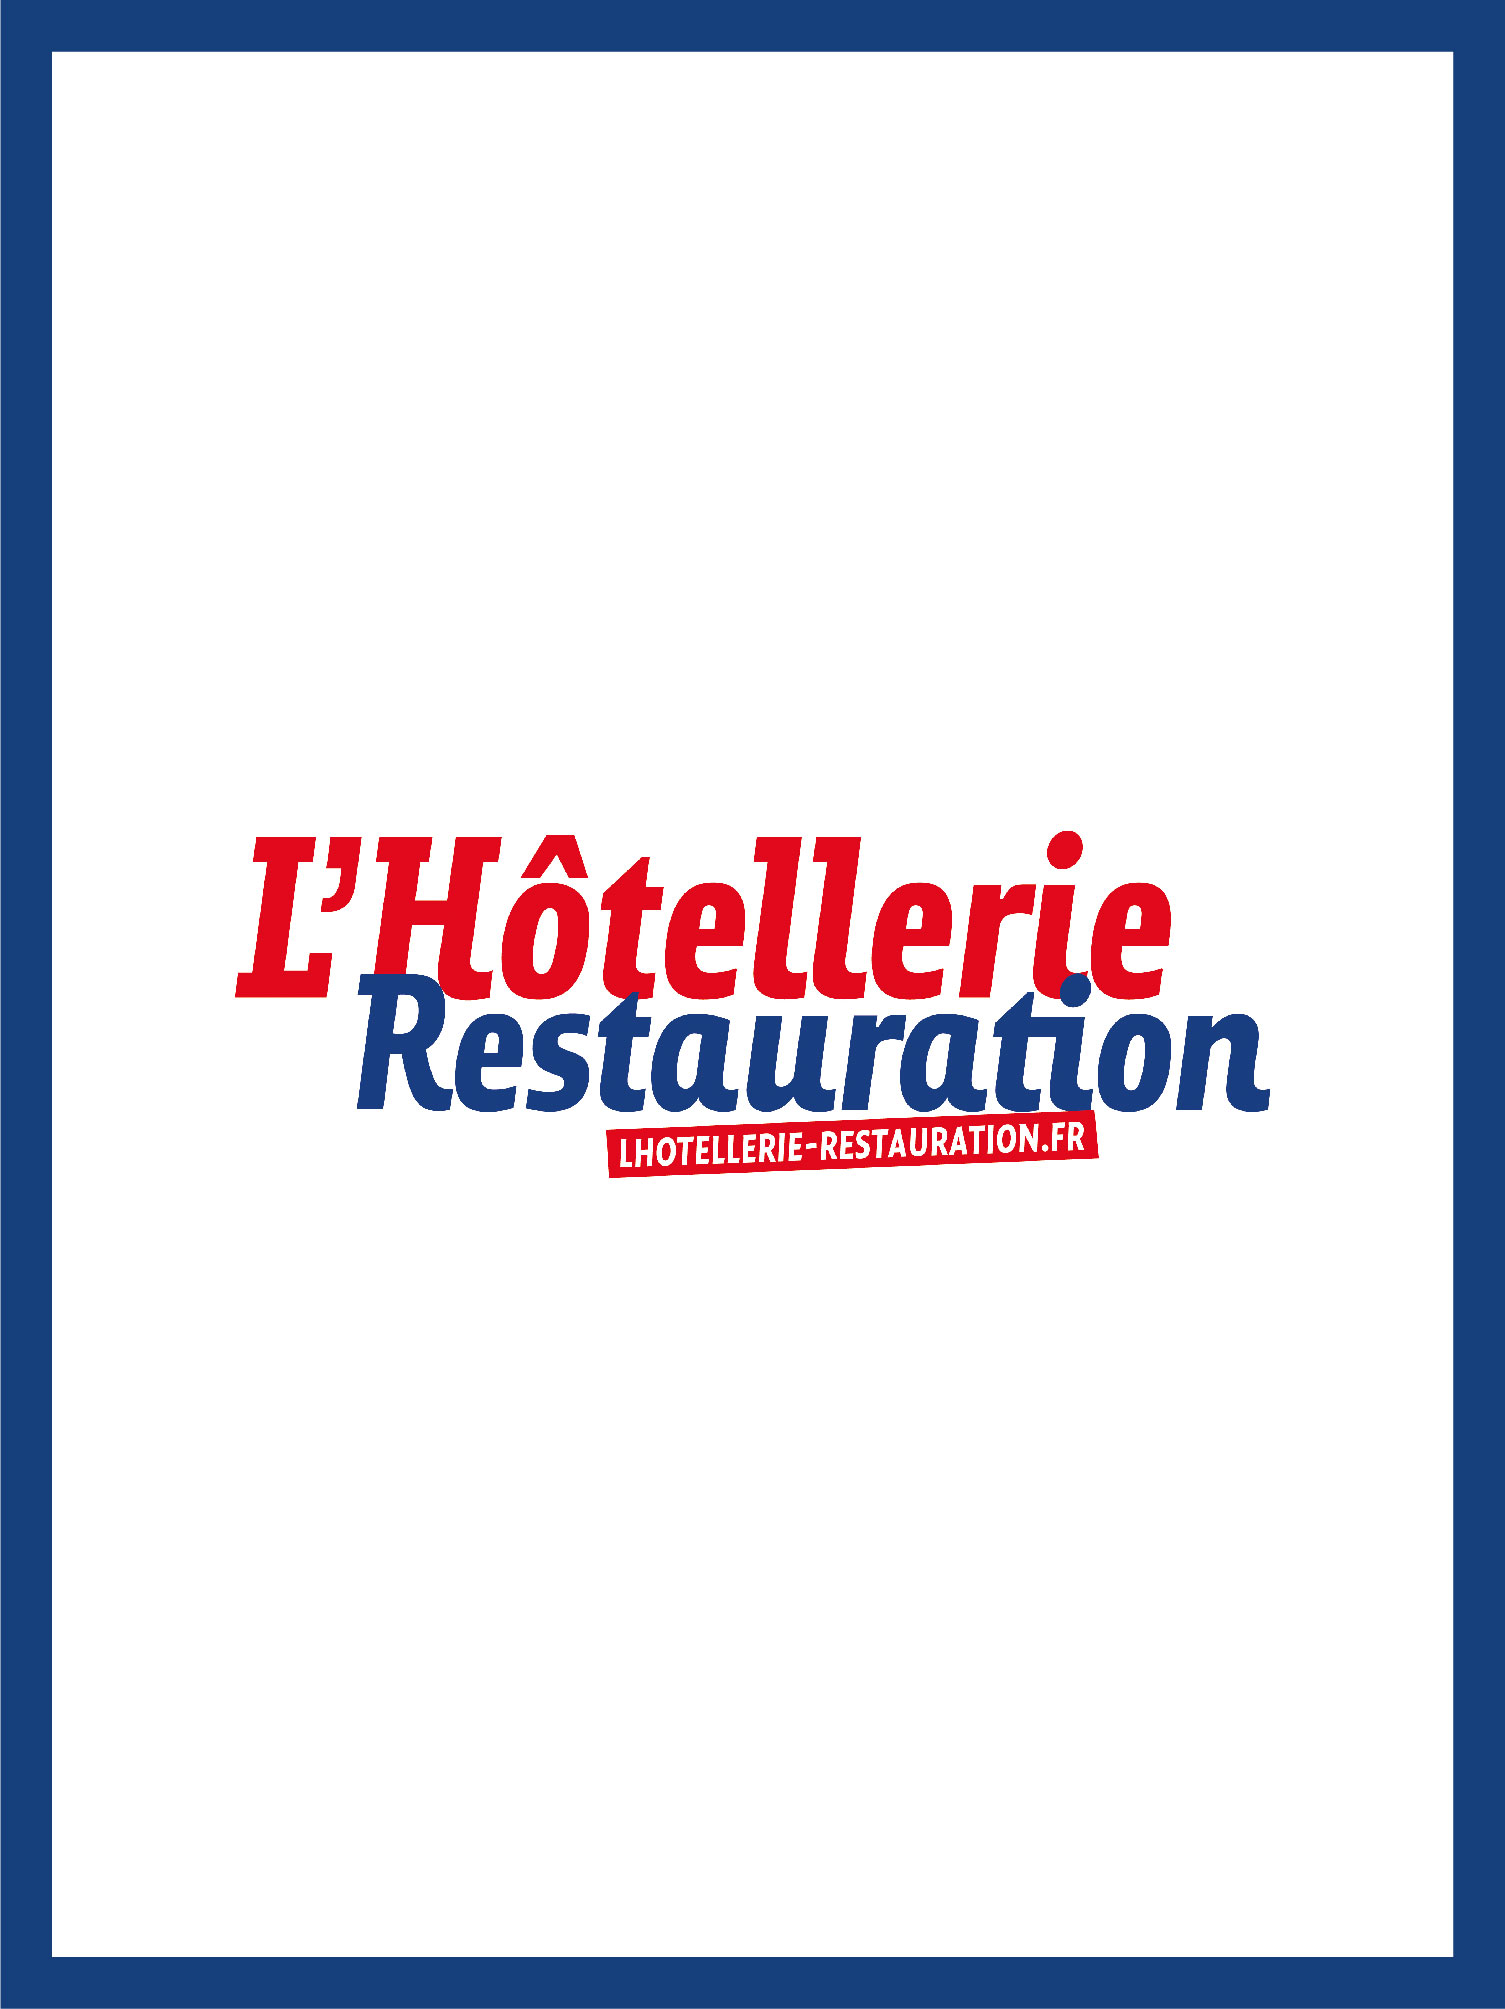 Couverture et logo du magazine L'hôtellerie restauration